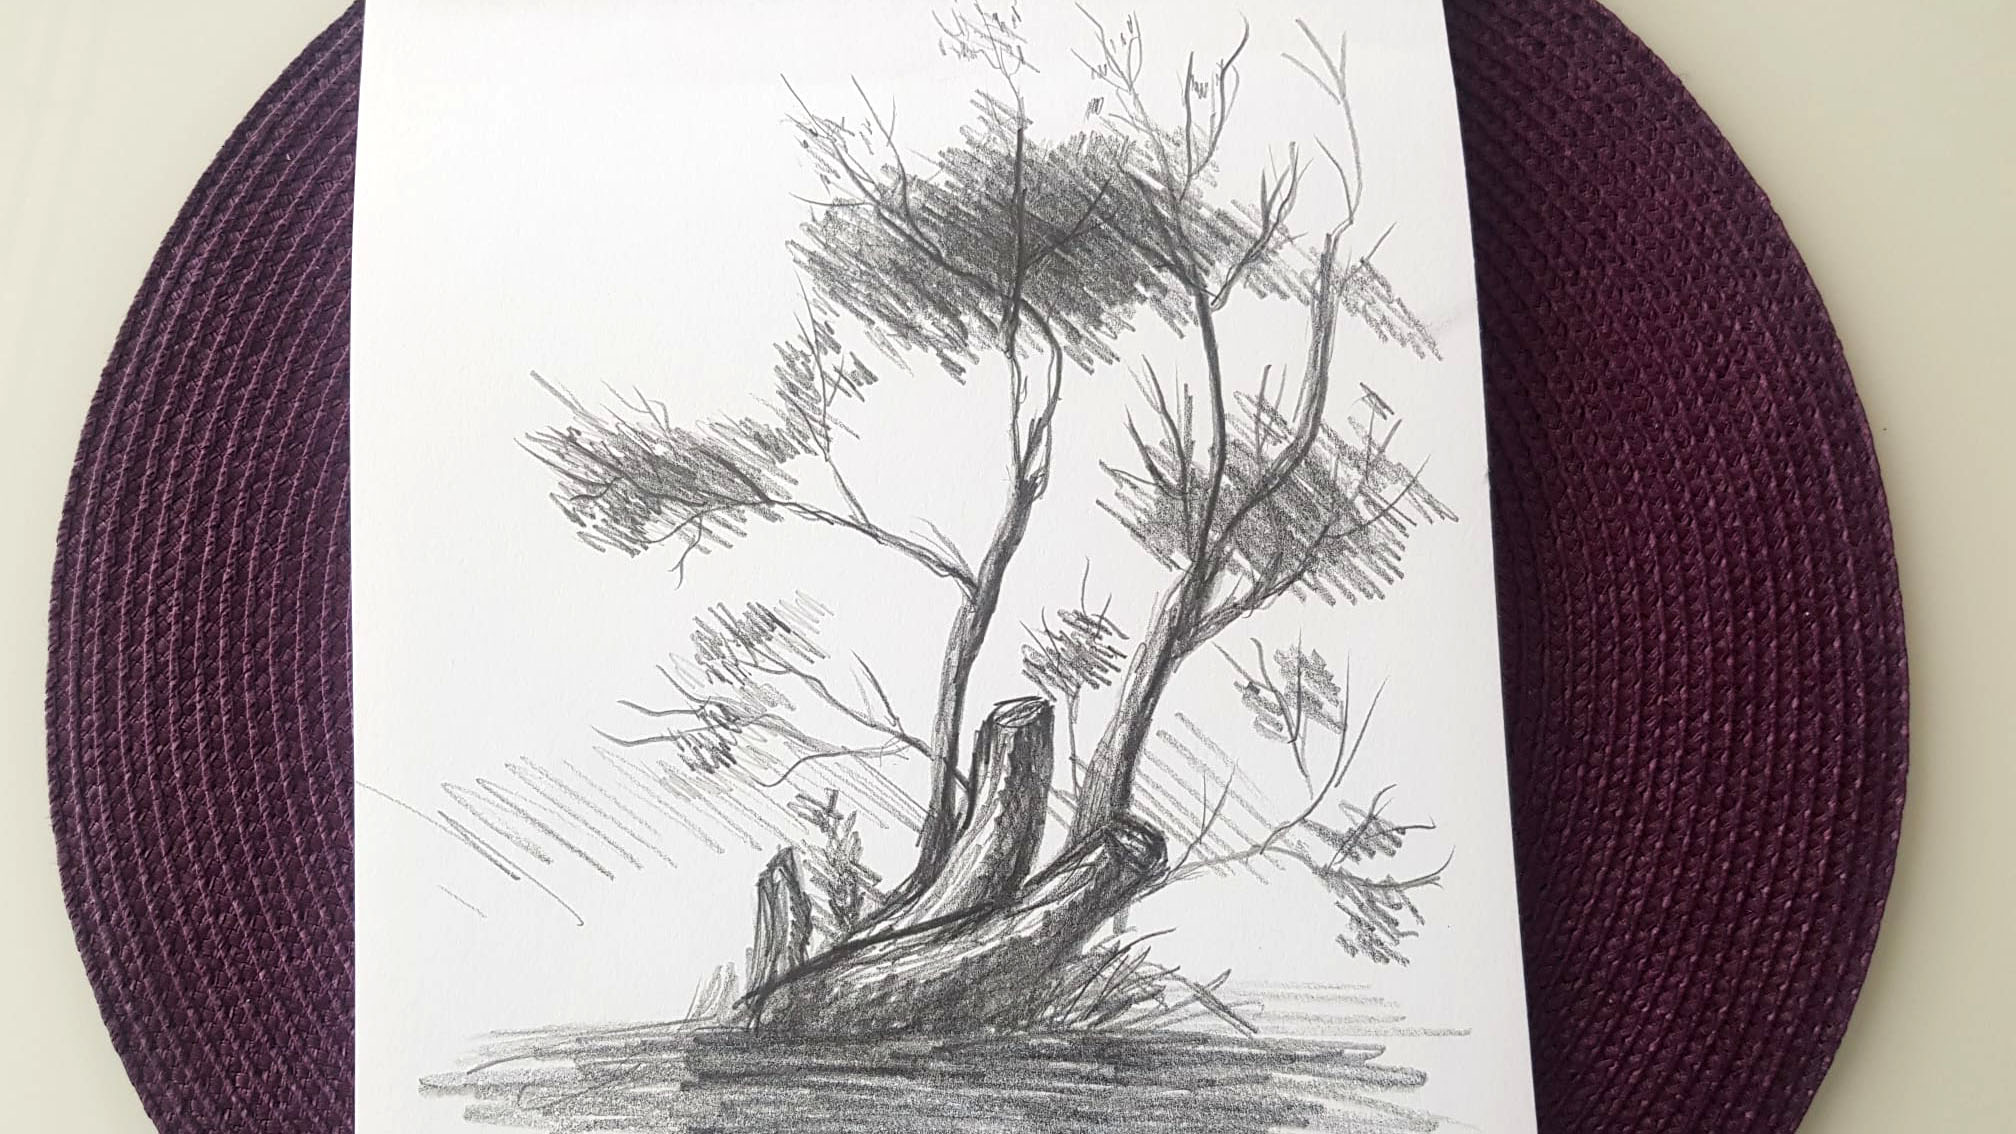 Desen in creion cu arbore - CristinaPicteaza